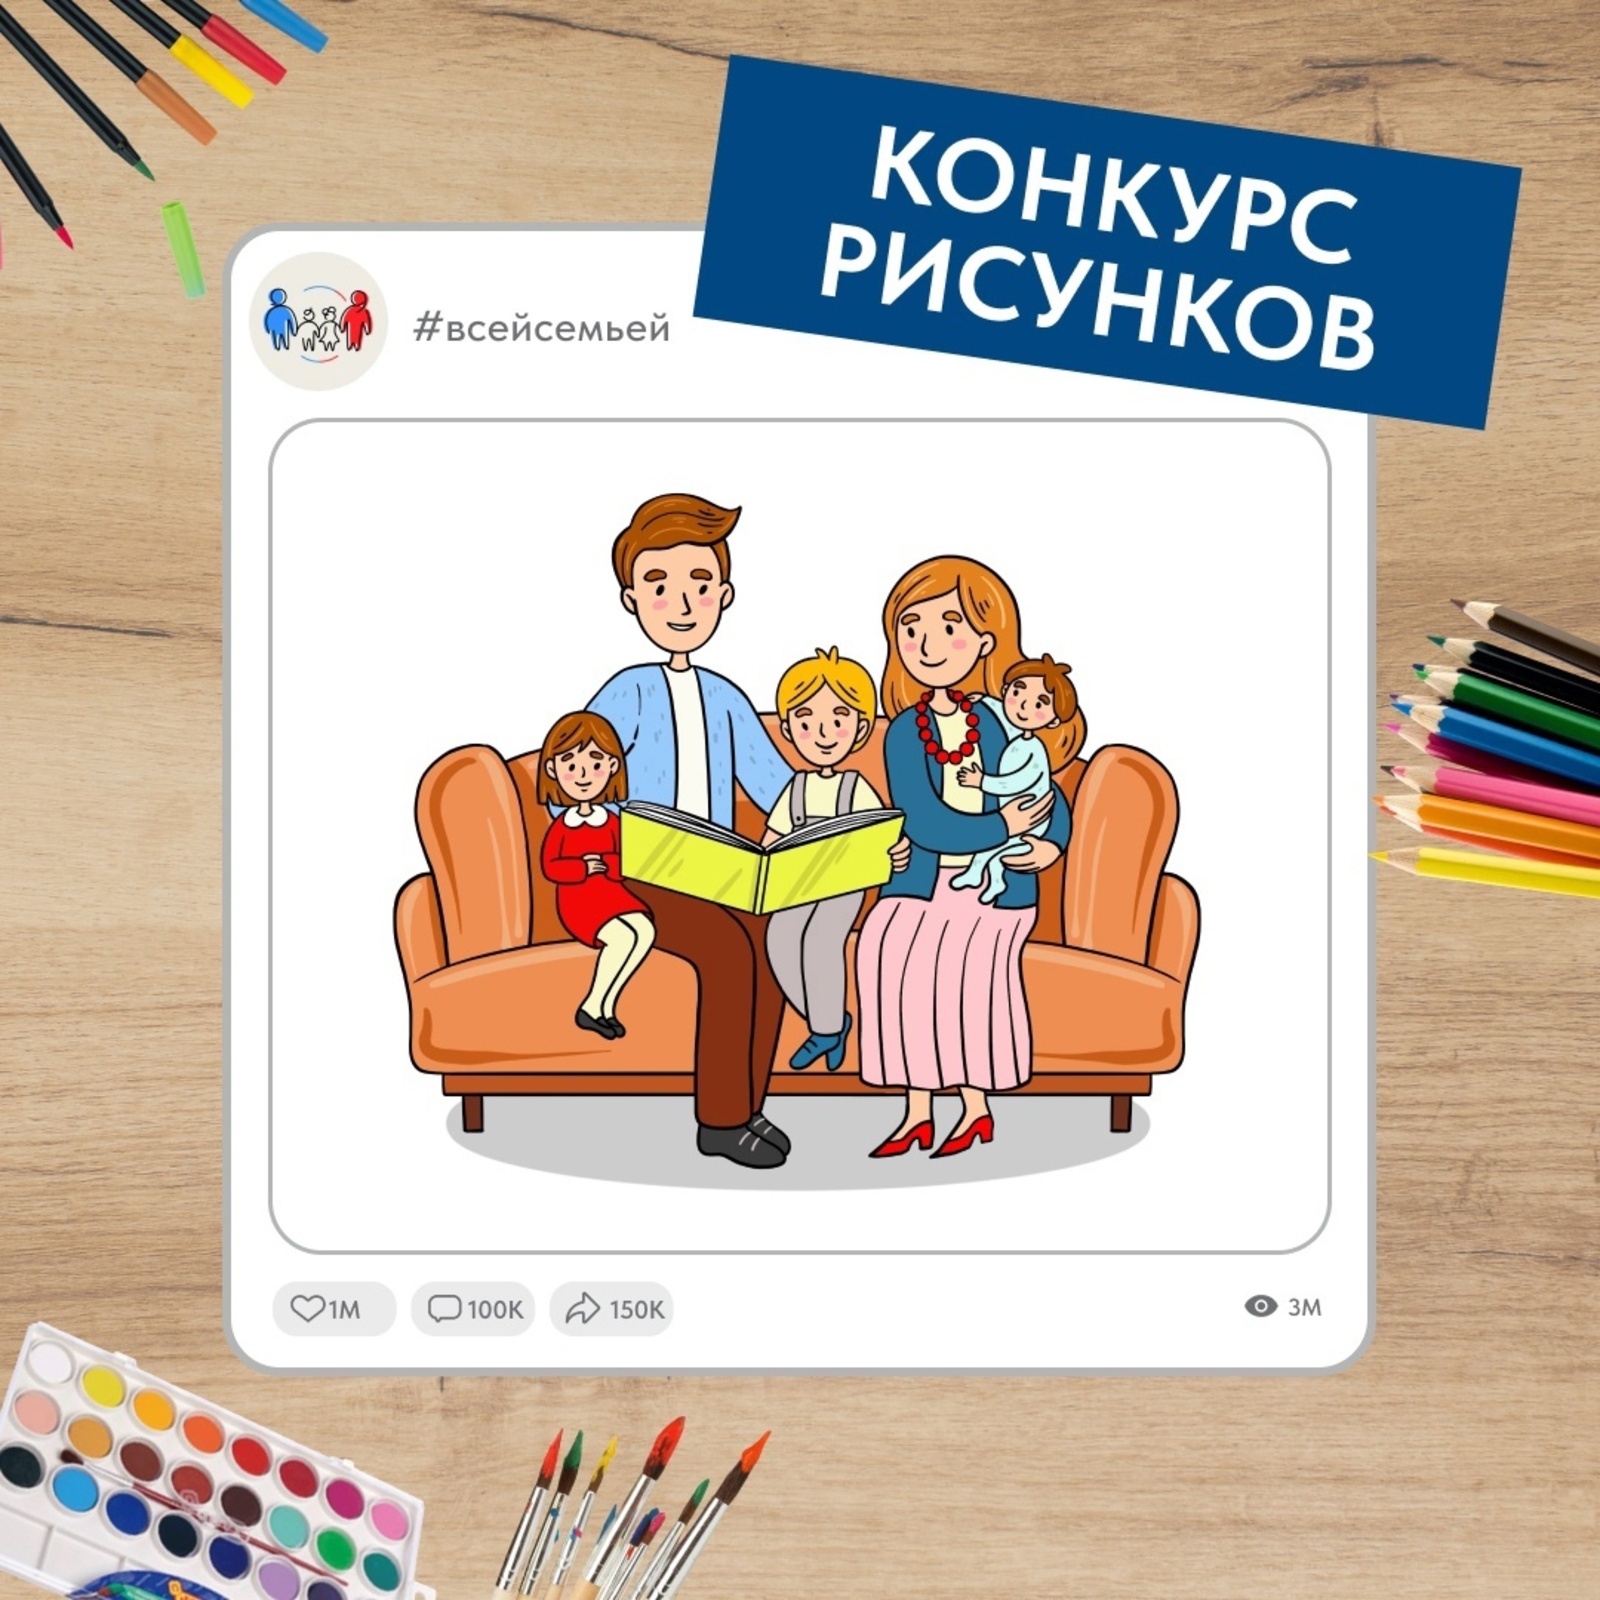 Иллюстрация в приложении Проект «Всей семьей» запустил новый конкурс для детей и их родителей со всей России